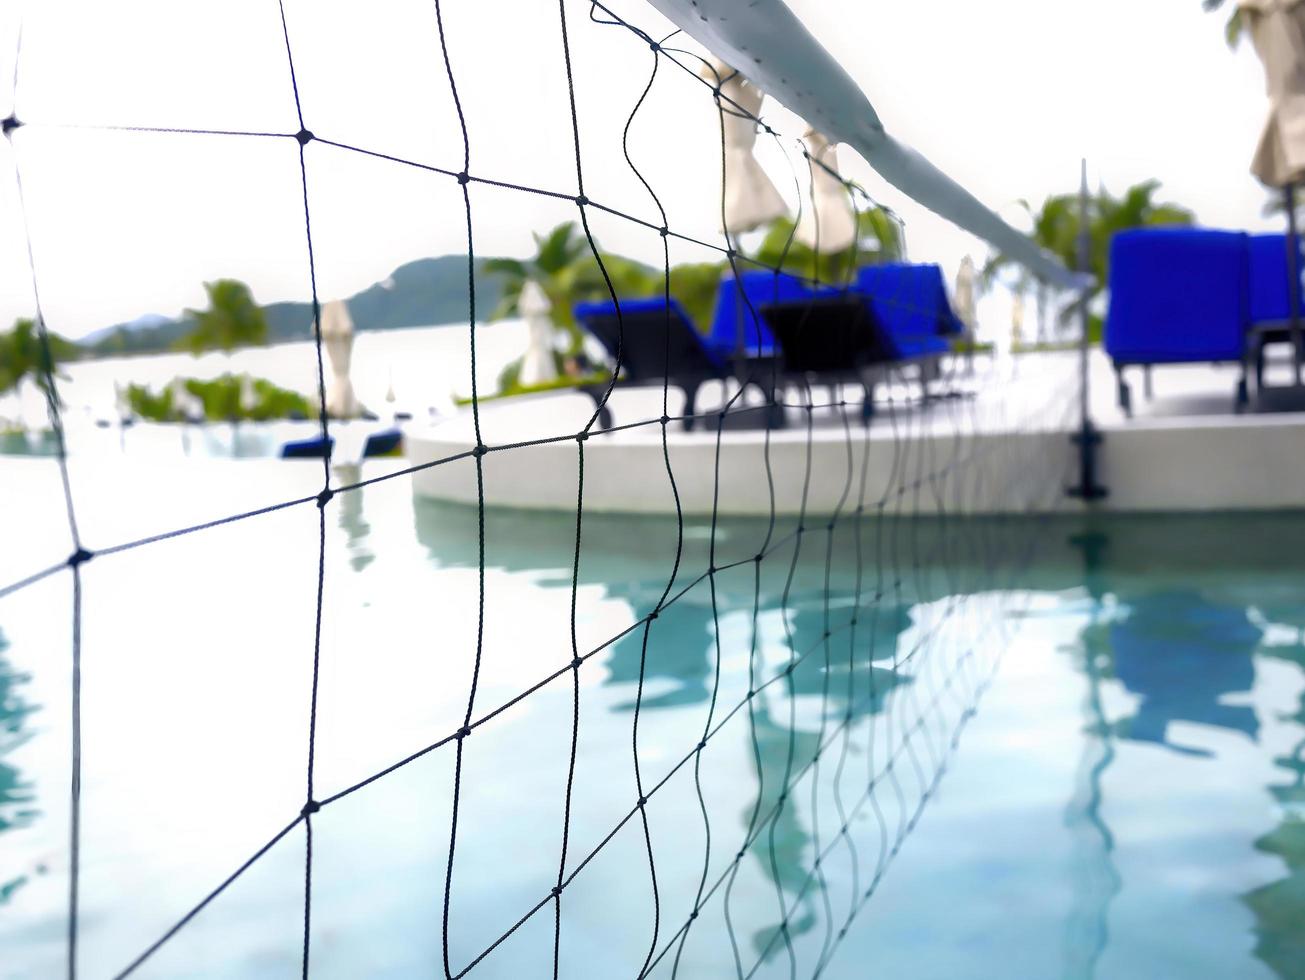 detalj av volleybollnät över blåvattenspool på en resort i phuket thailand foto